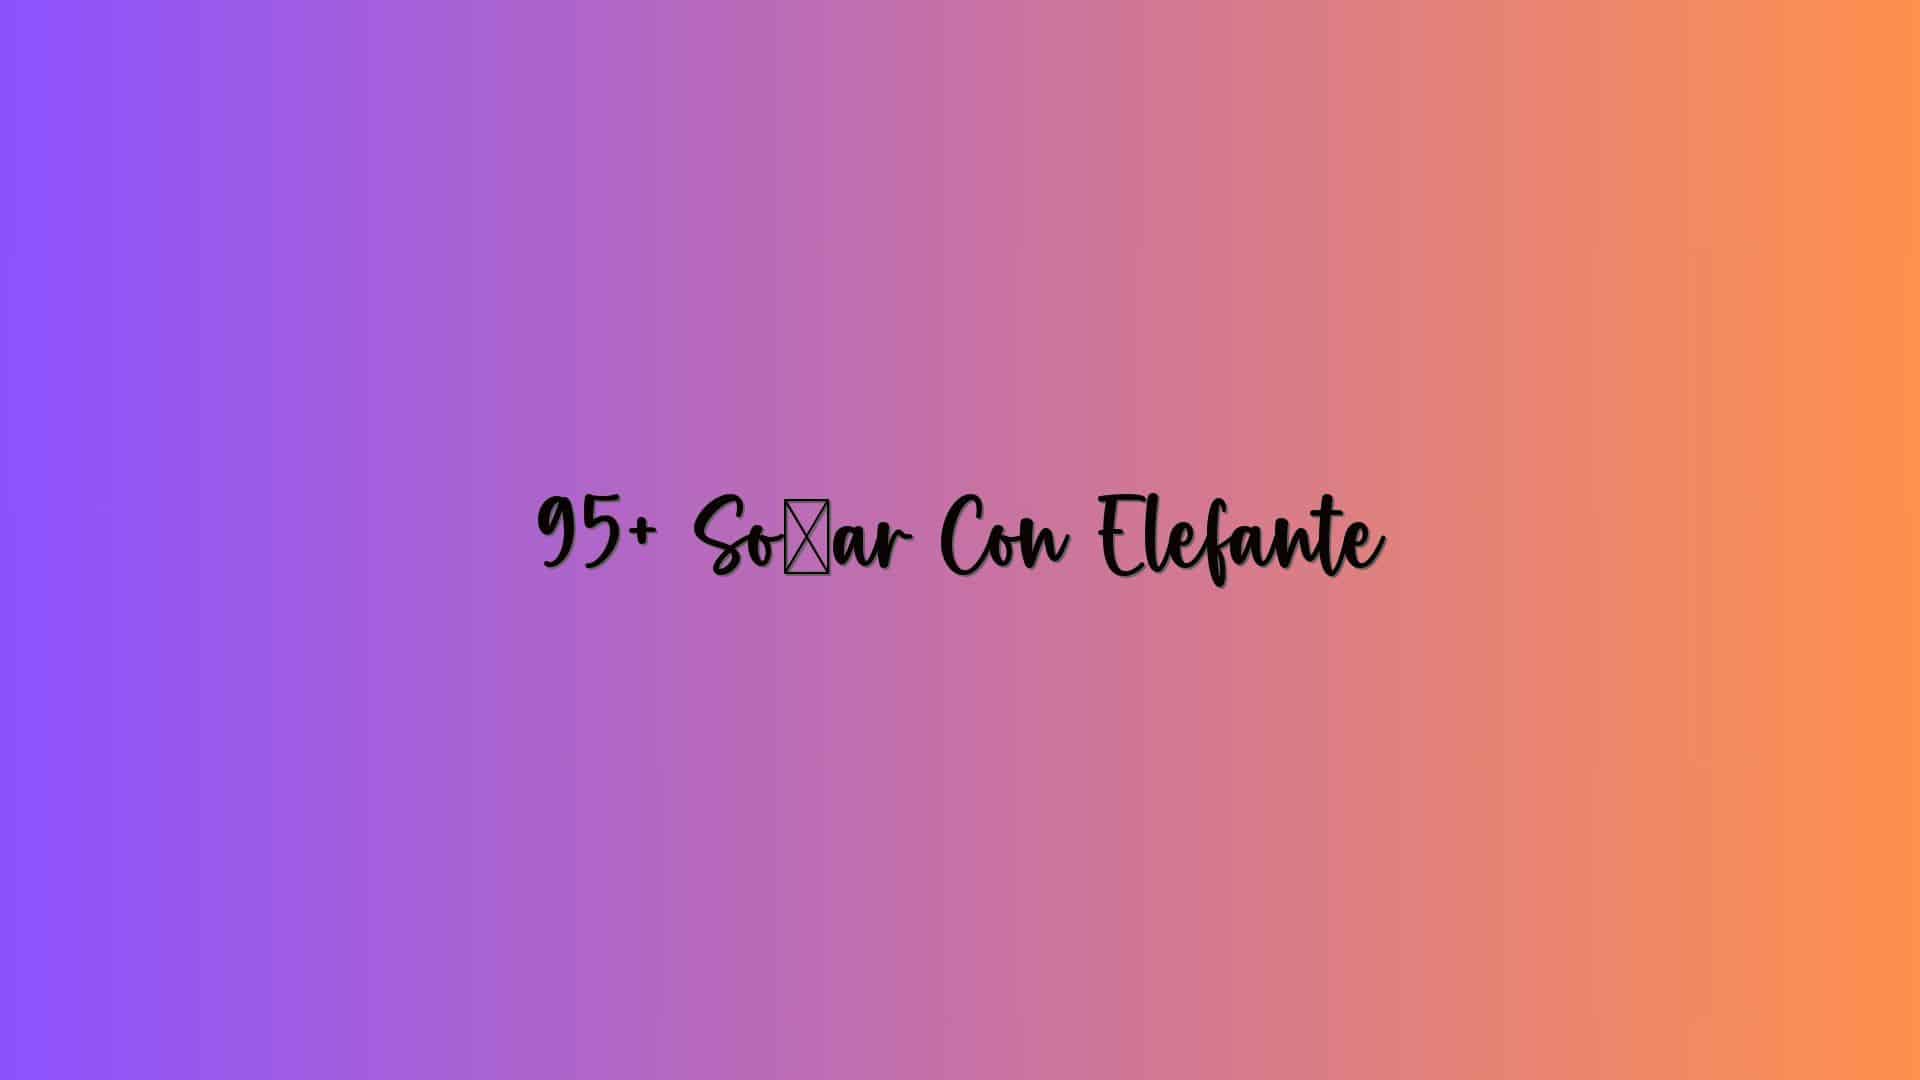 95+ Soñar Con Elefante